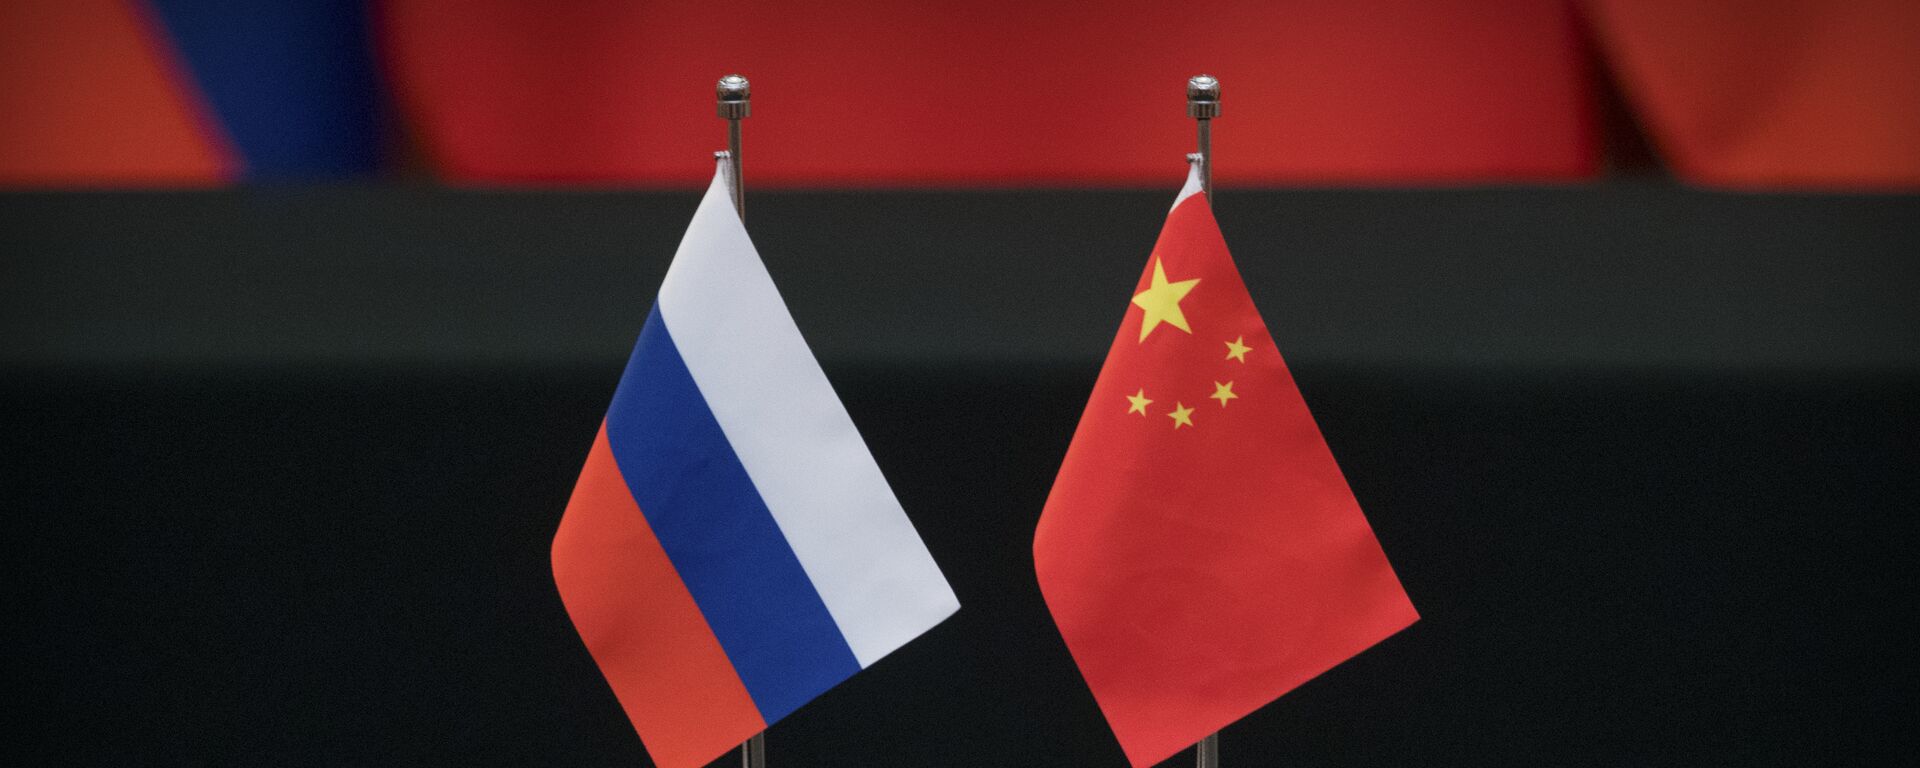 Las banderas de Rusia y China - Sputnik Mundo, 1920, 08.09.2021